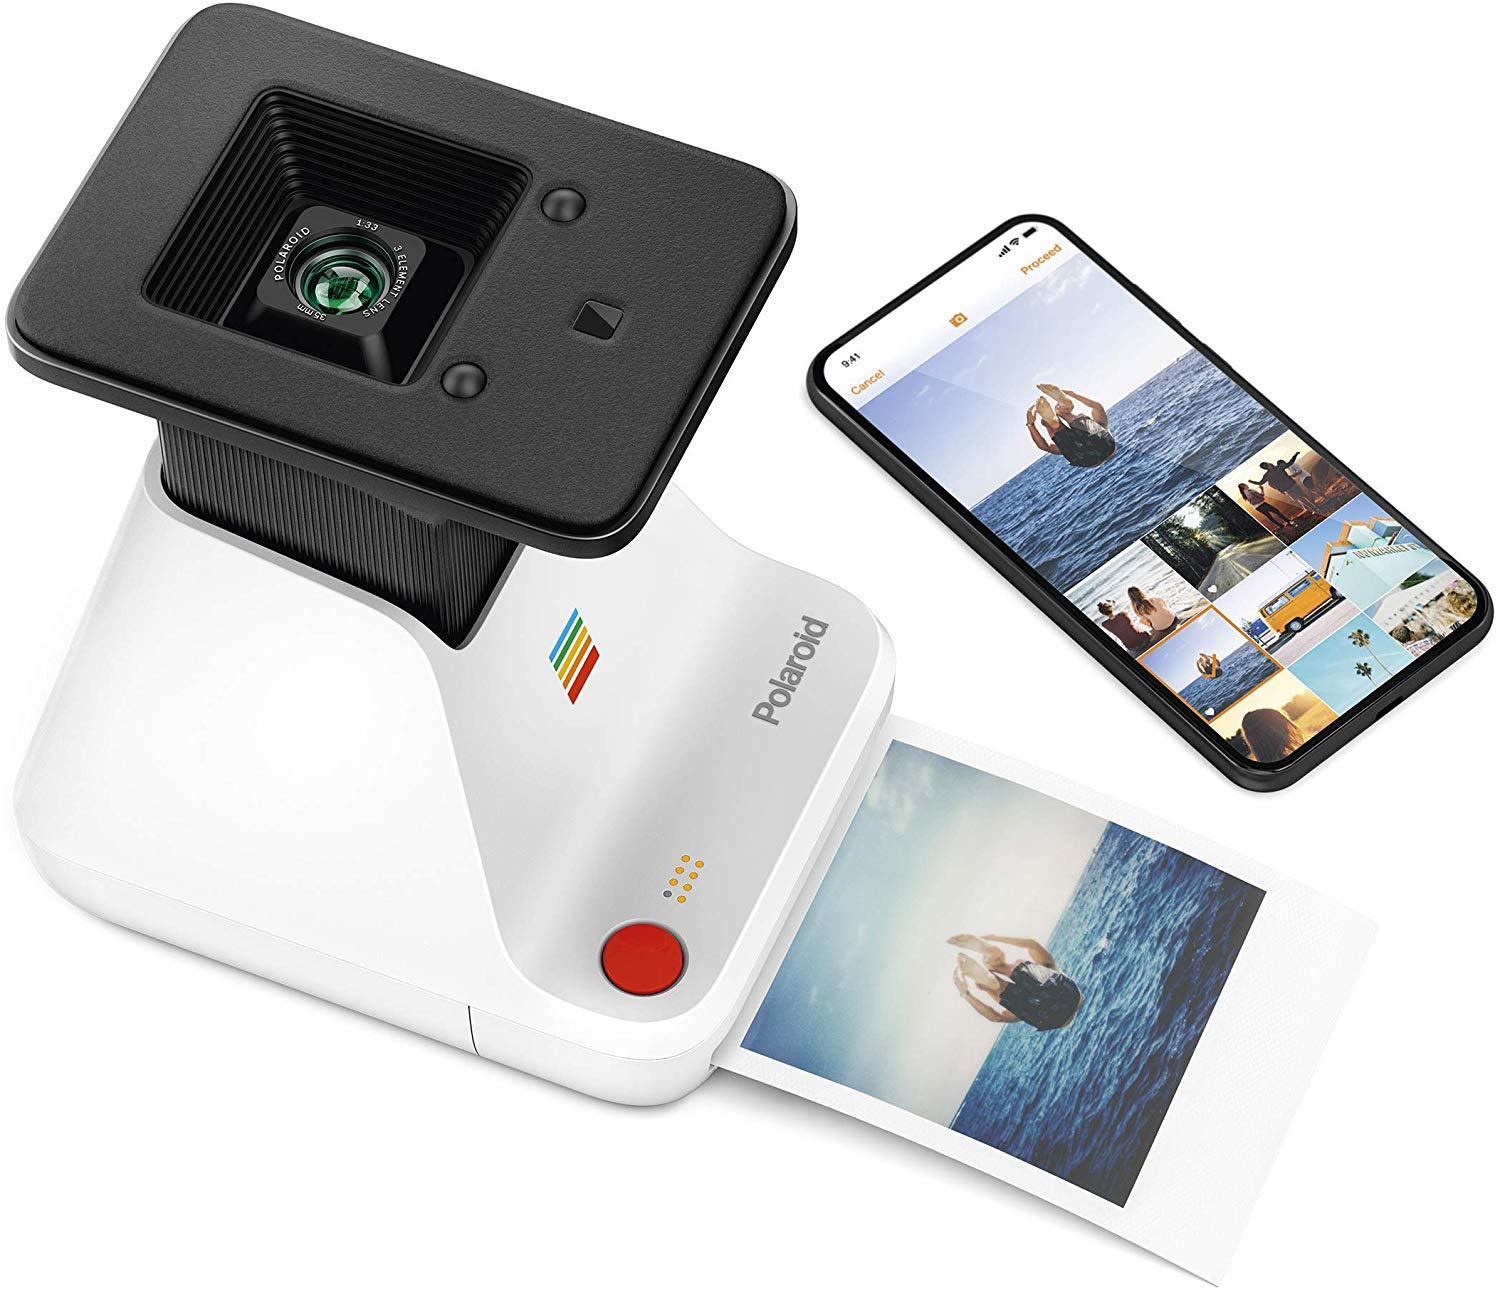 The Polaroid Lab - Digital to Analog Polaroid Photo Printer, $130 @amazon.com